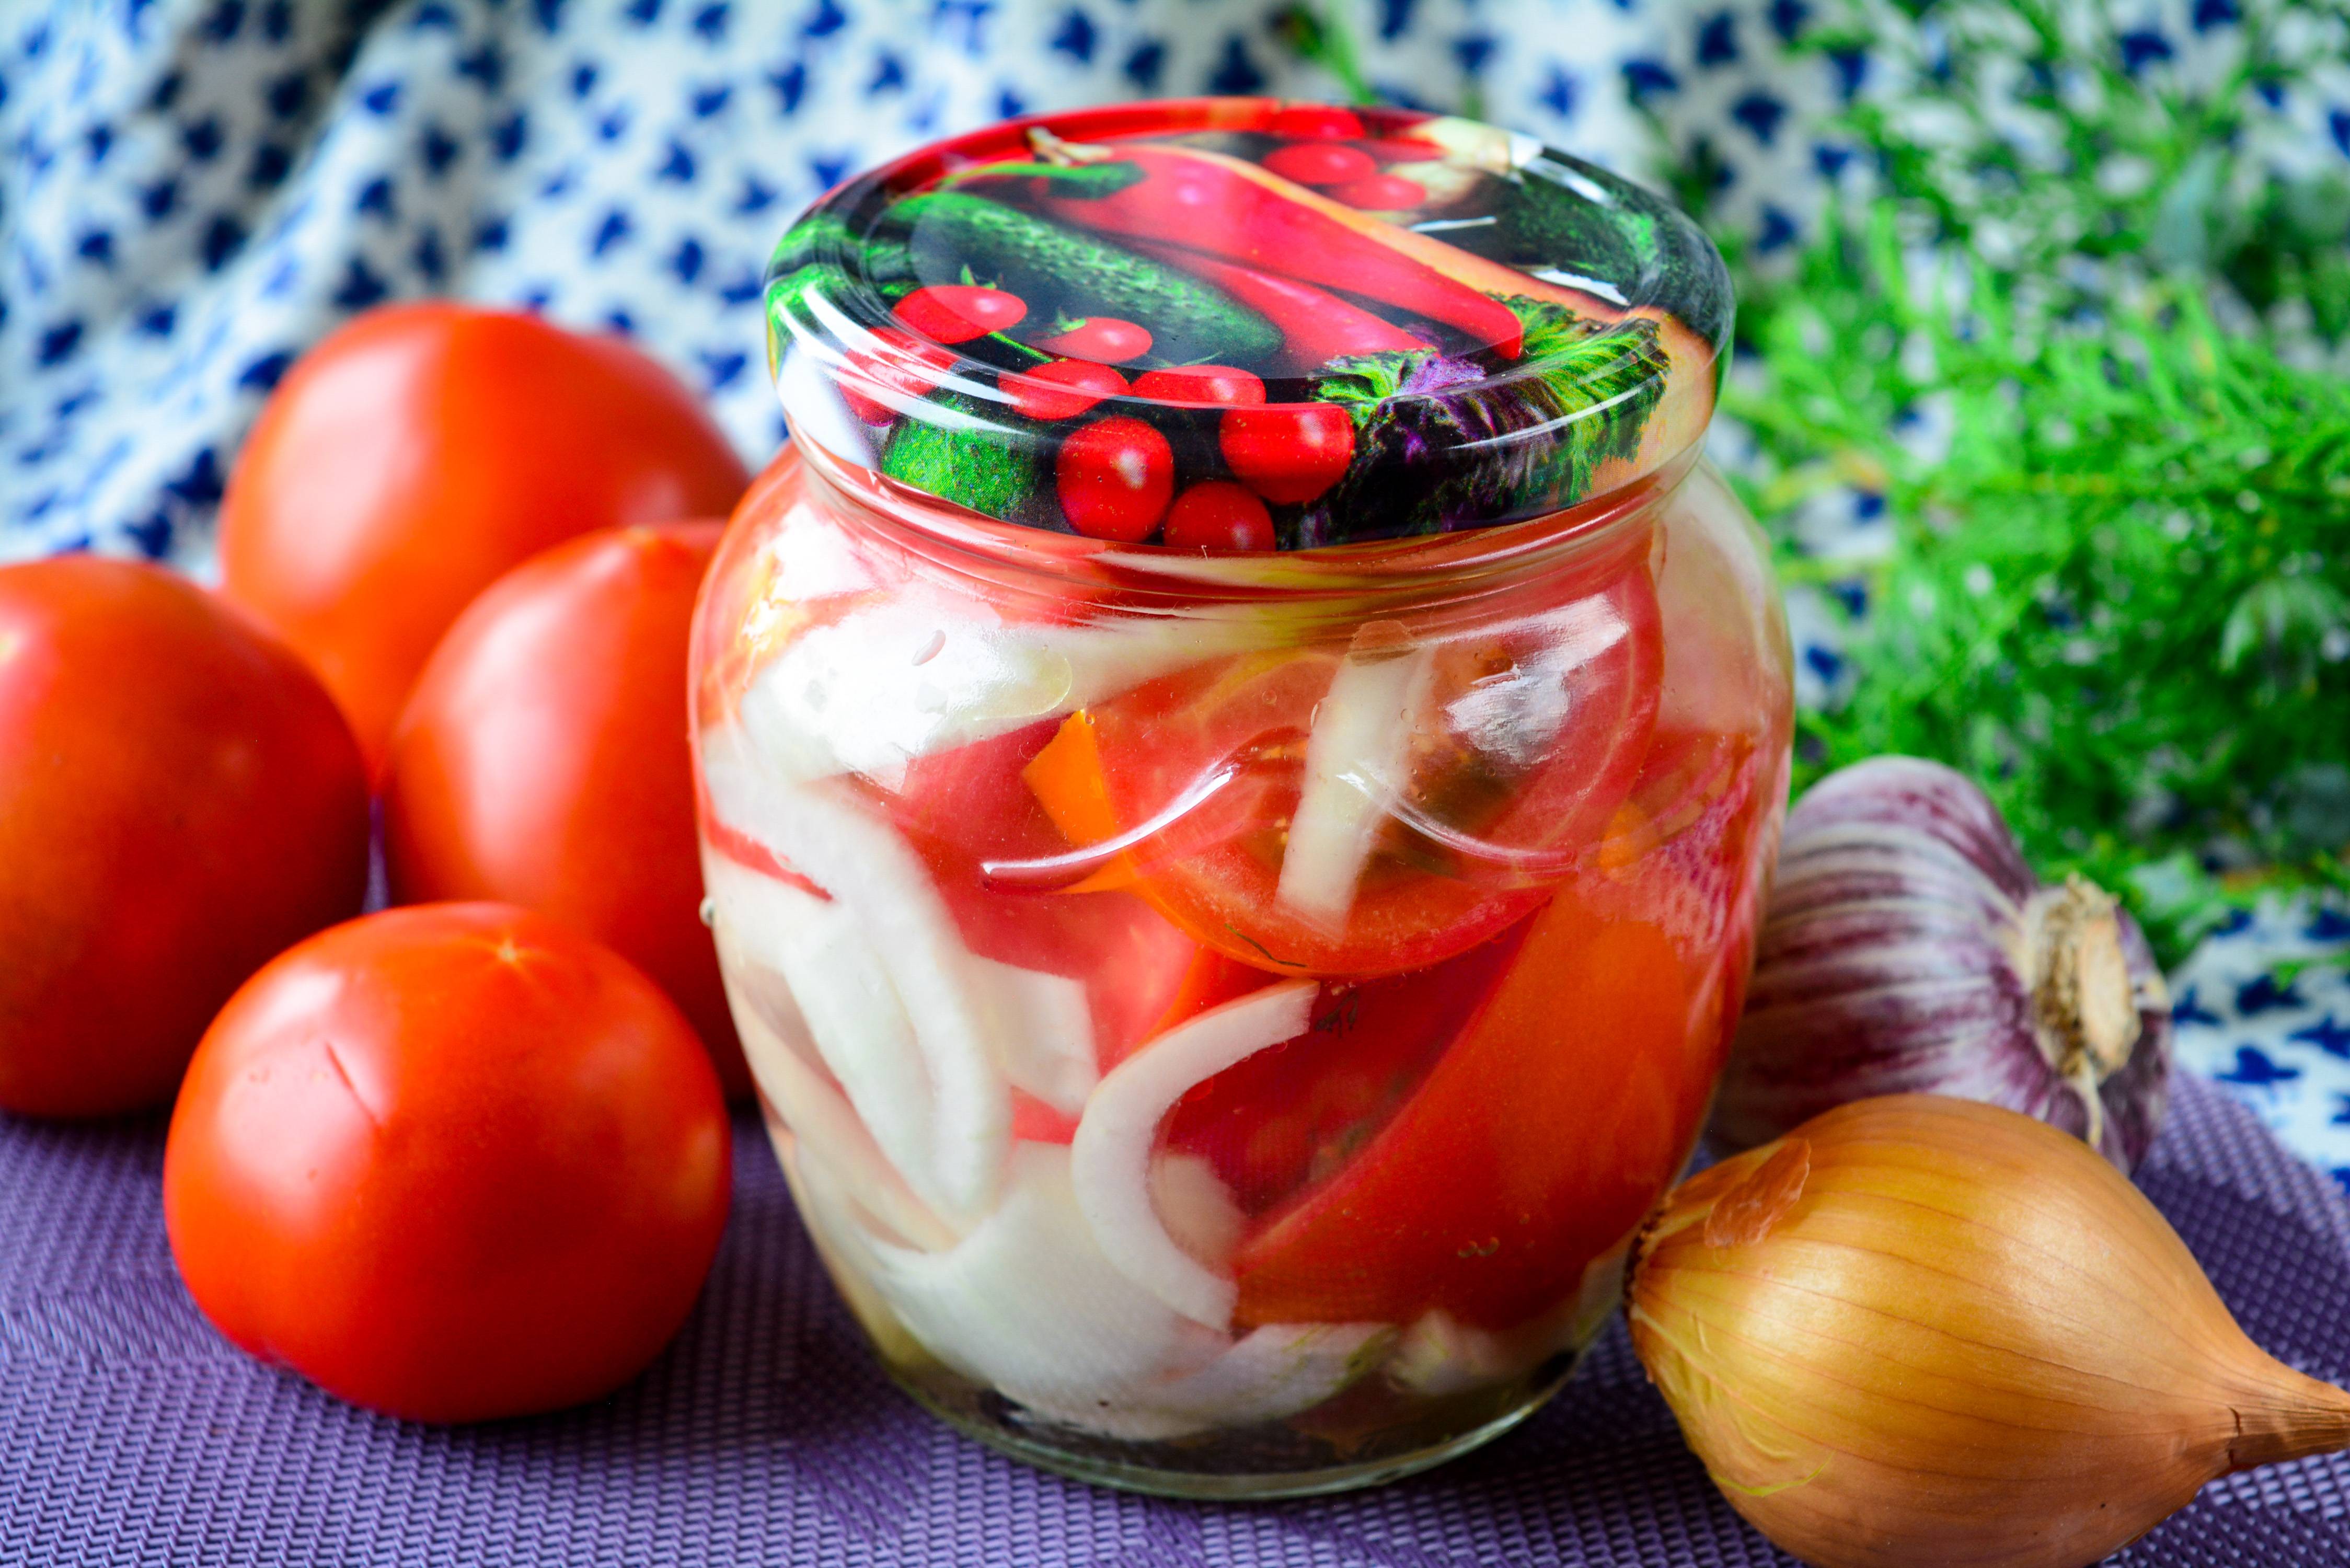 Как приготовить очень вкусные консервированные помидоры на зиму в литровых банках: подборка лучших рецептов